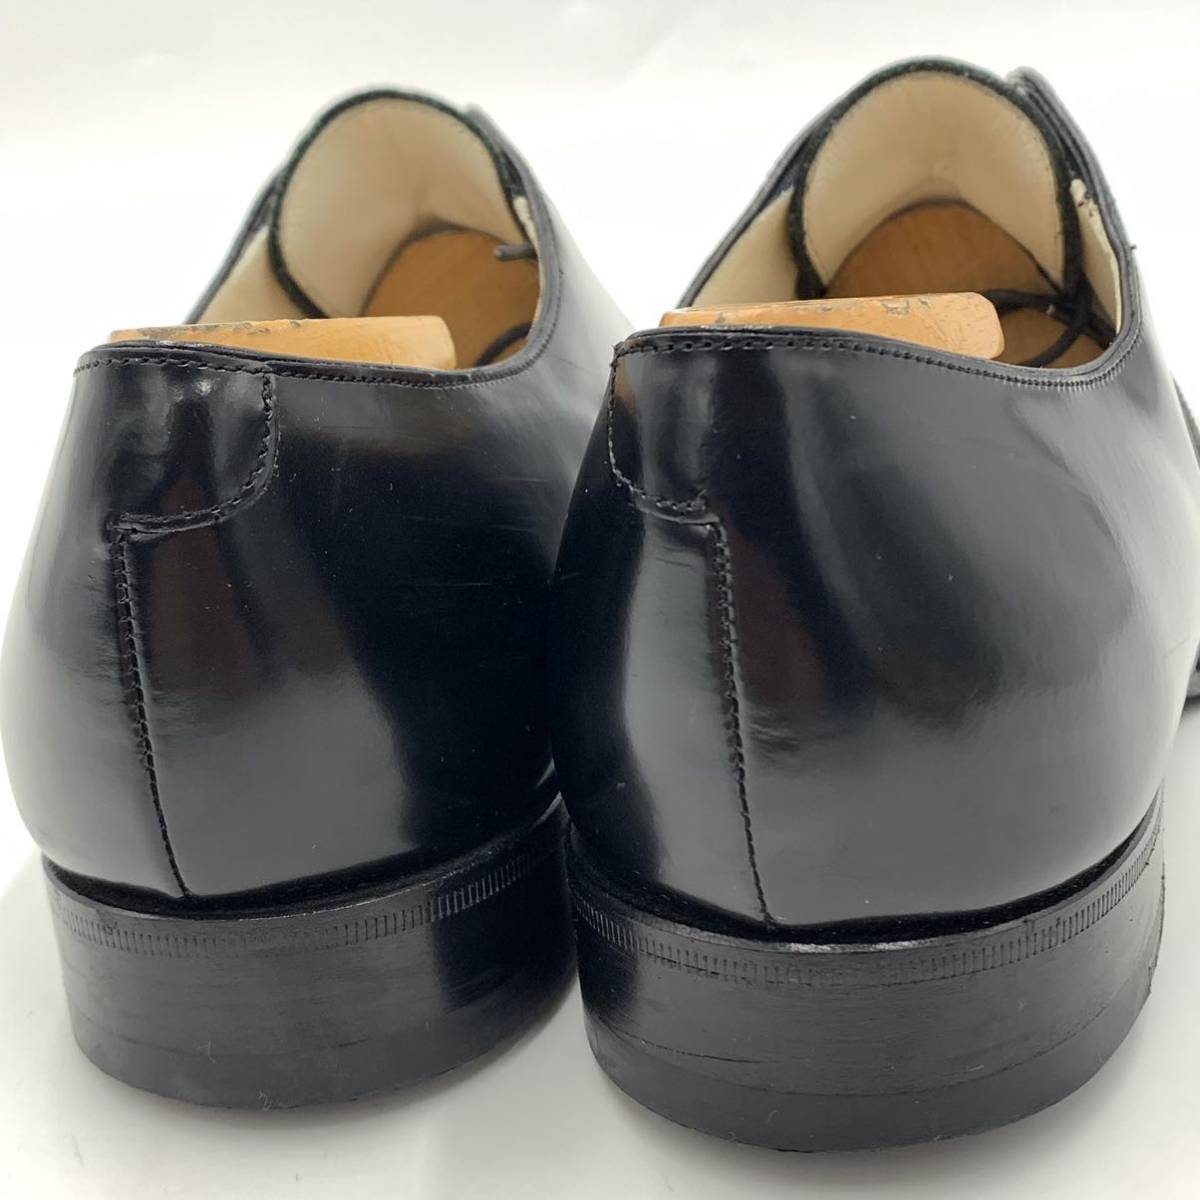 B☆美品/高級紳士靴'伊製' Louis Vuitton ルイヴィトン BM0128 18年製 レザー 比翼 ドレス/ビジネスシューズ 革靴 ストレートチップ 7 25.0_画像3